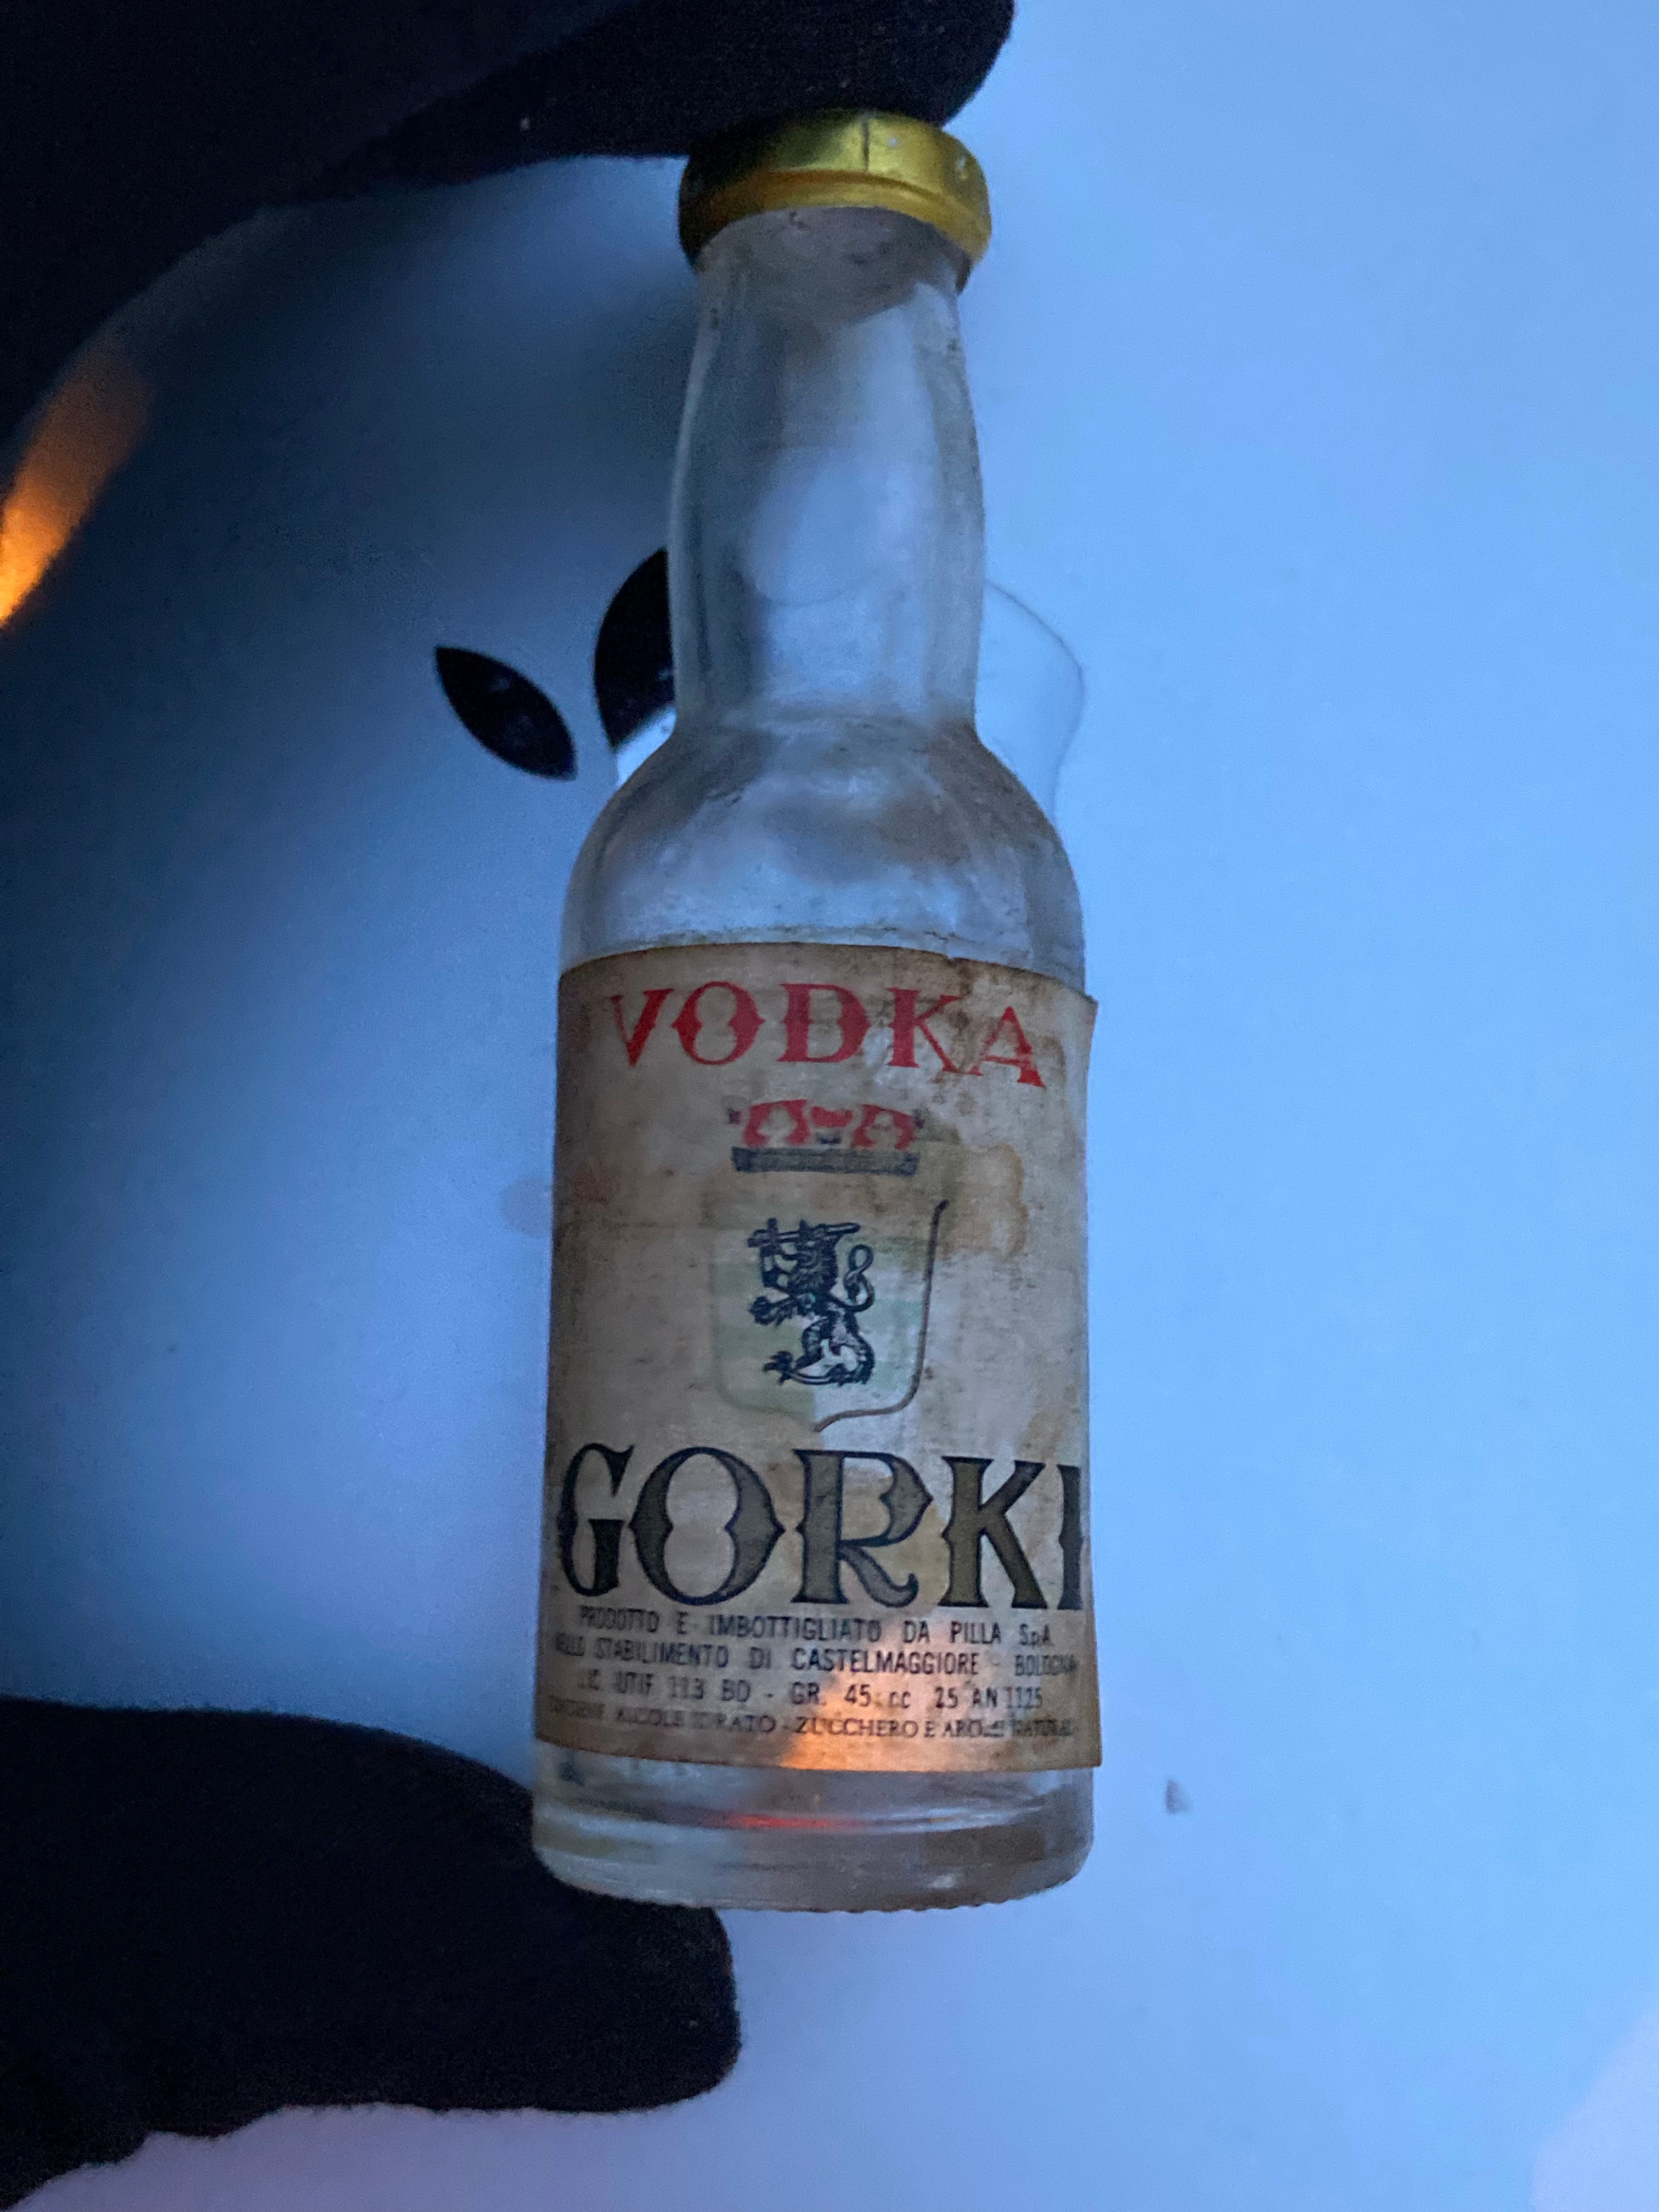 İtalyan Vodkası Gorki(1980'lerden)